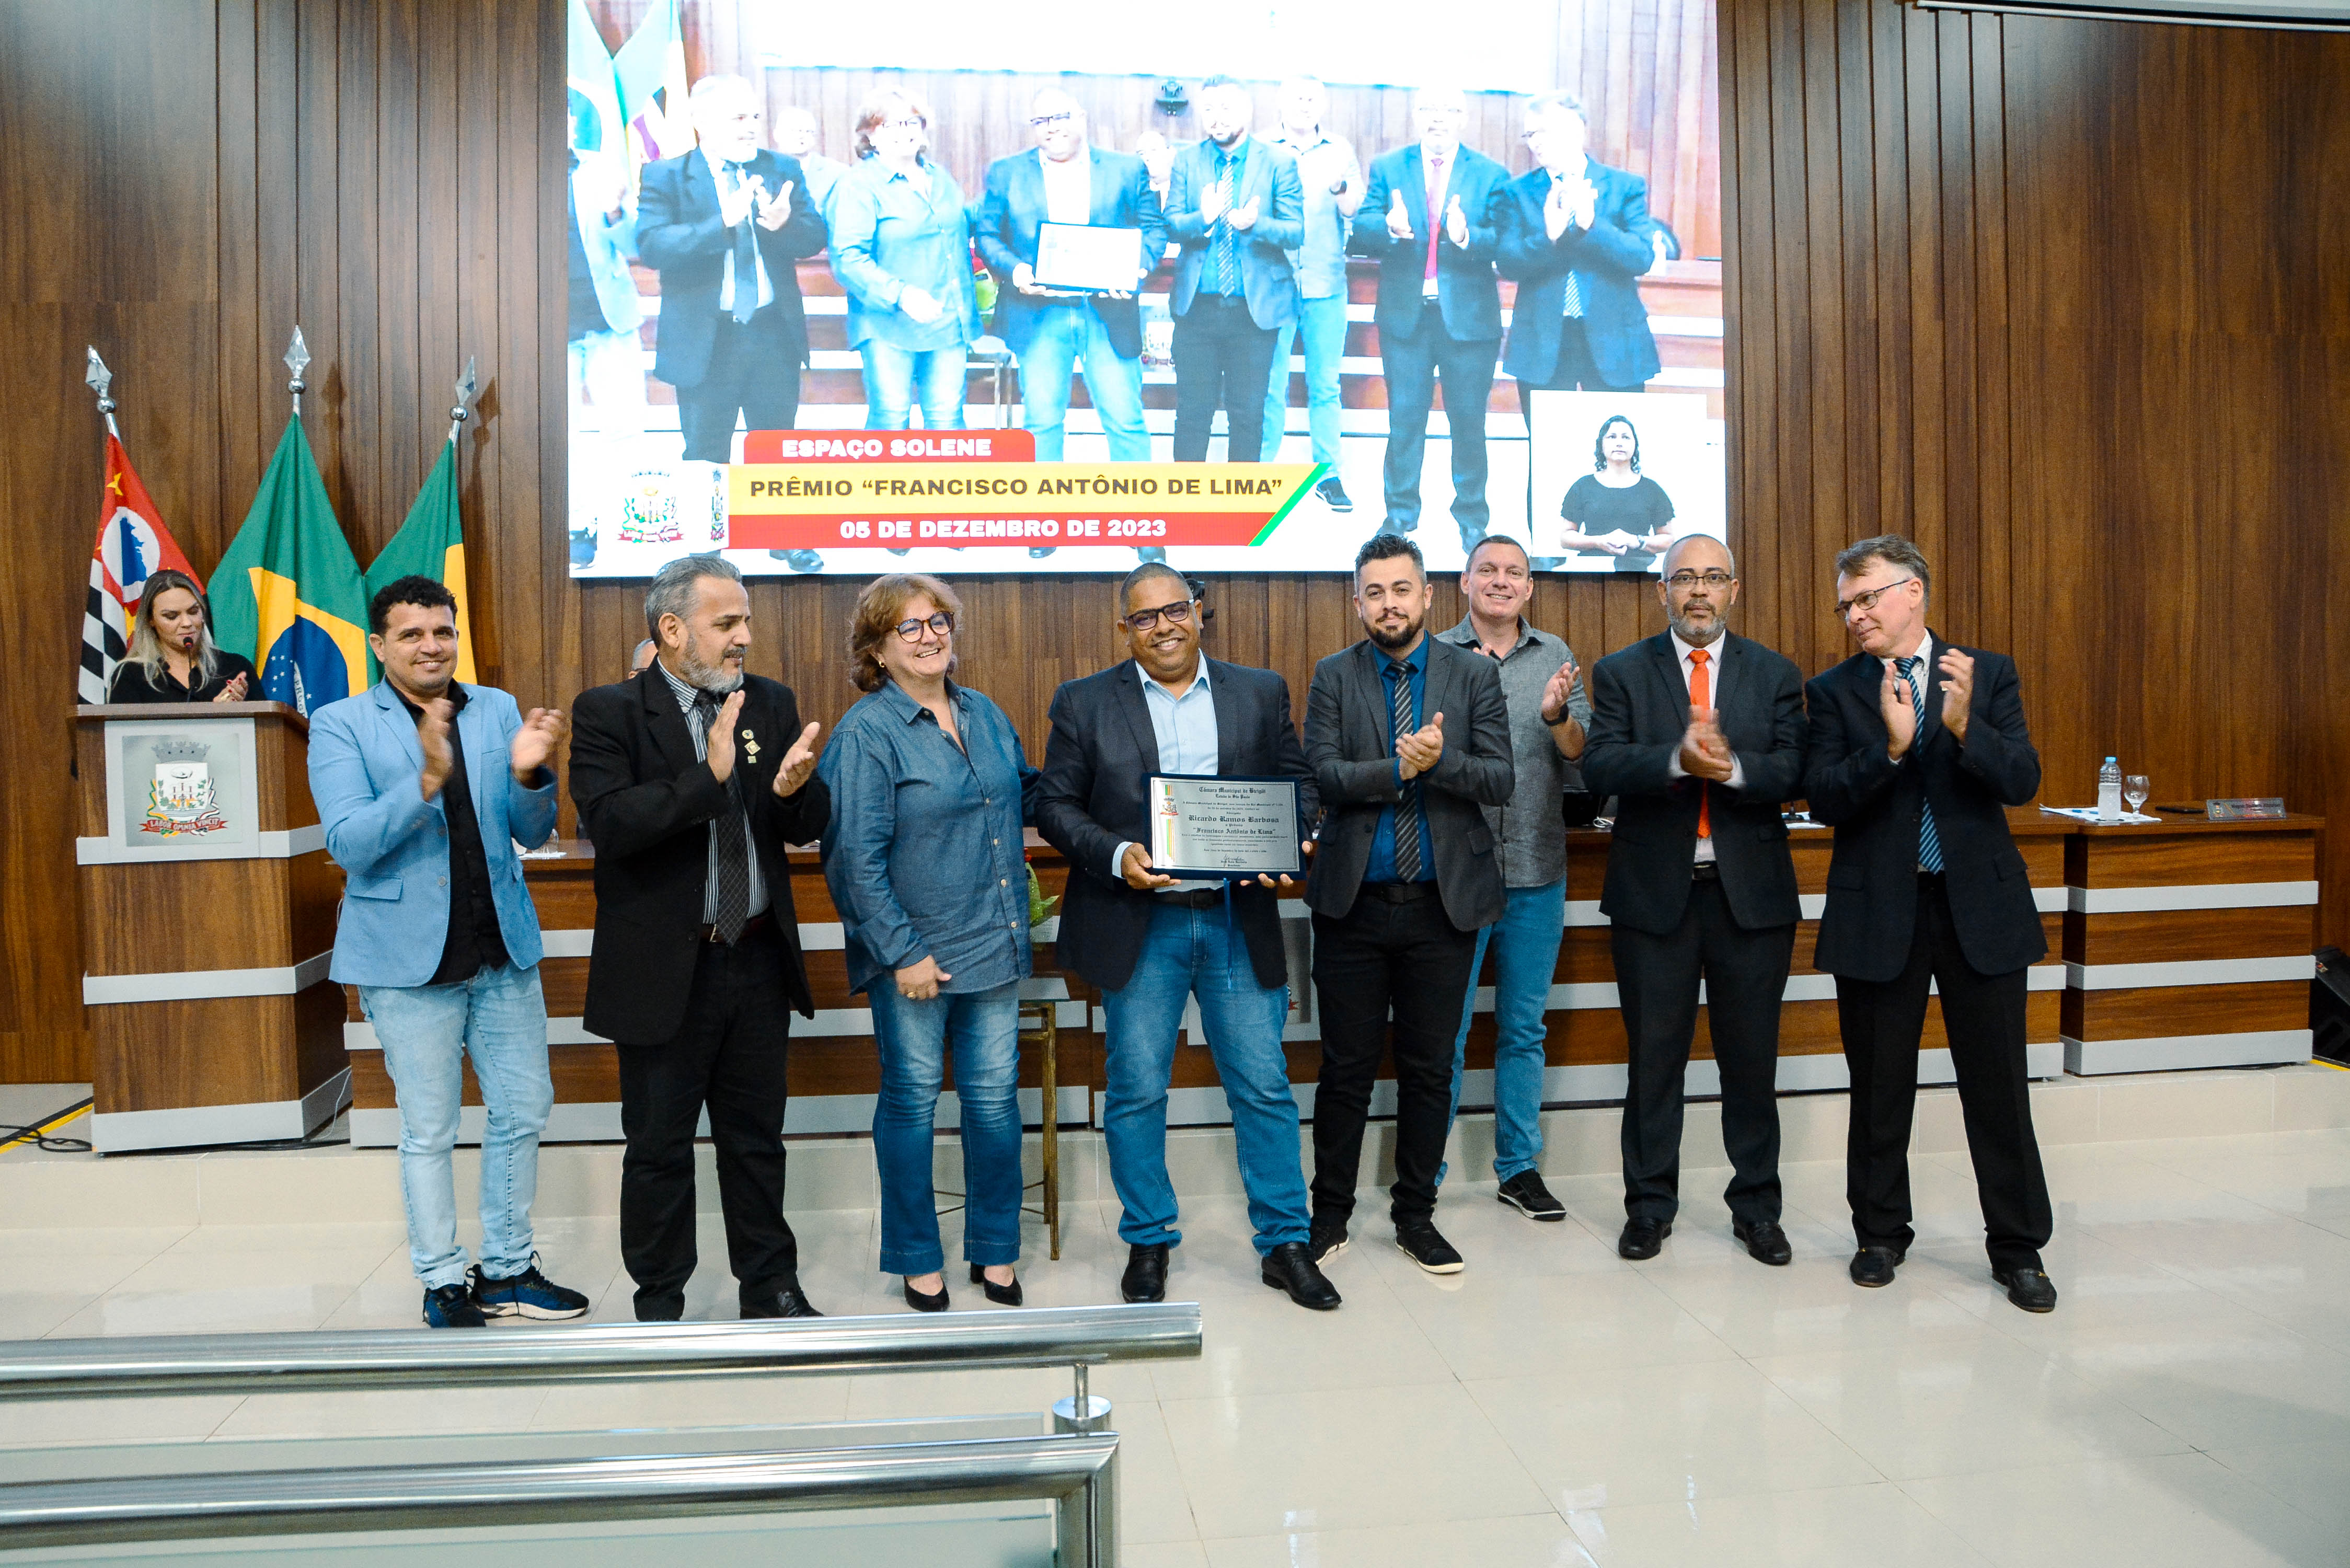 Câmara homenageia o advogado Ricardo Ramos Barbosa com o Prêmio “Francisco Antônio de Lima”